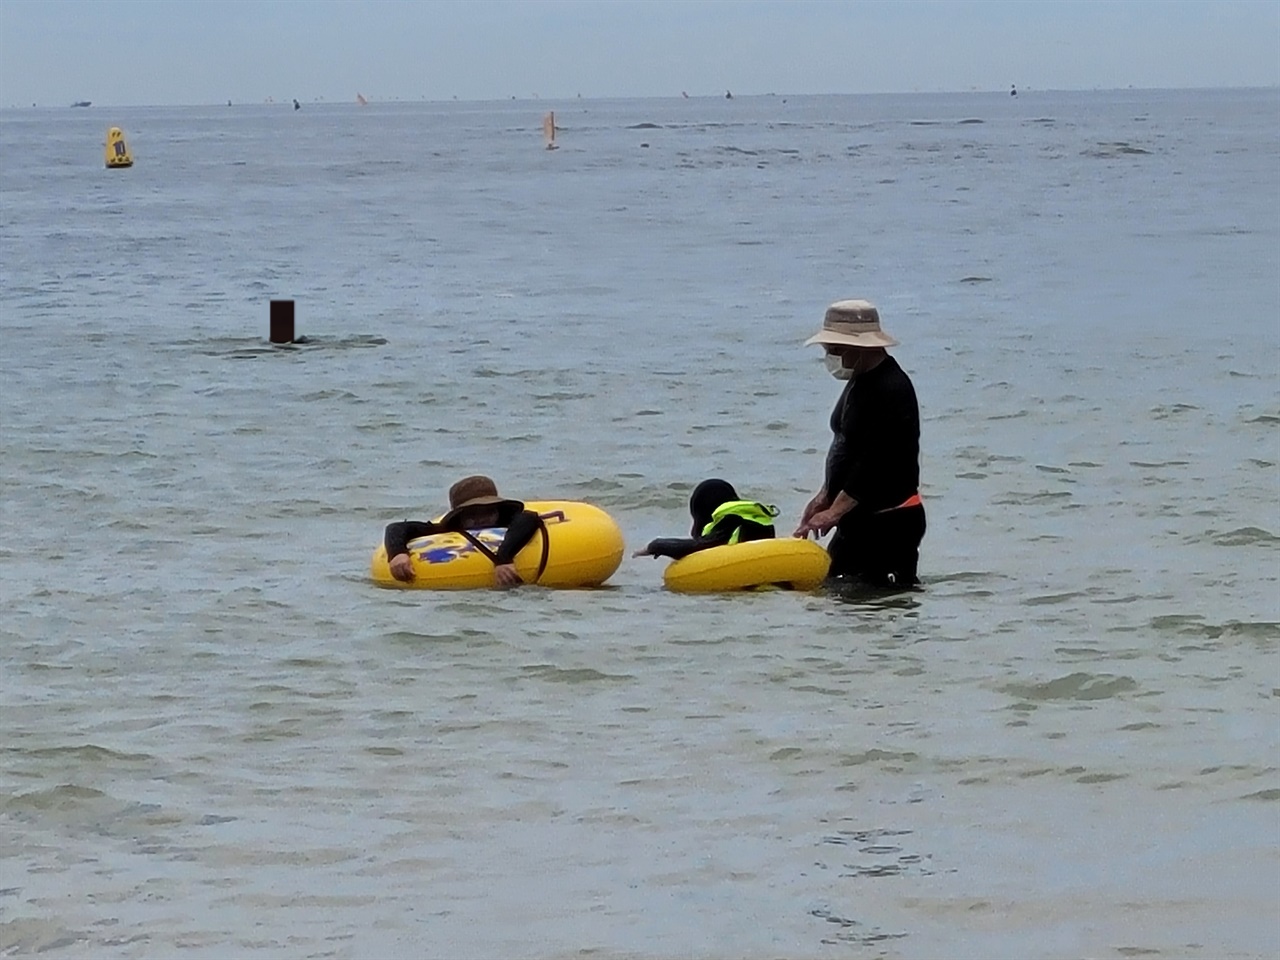 대천해수욕장을 찾은 피서객들은 물놀이를 즐기는가 하면, 백사장에서 모래 놀이를 즐기고 있었다.